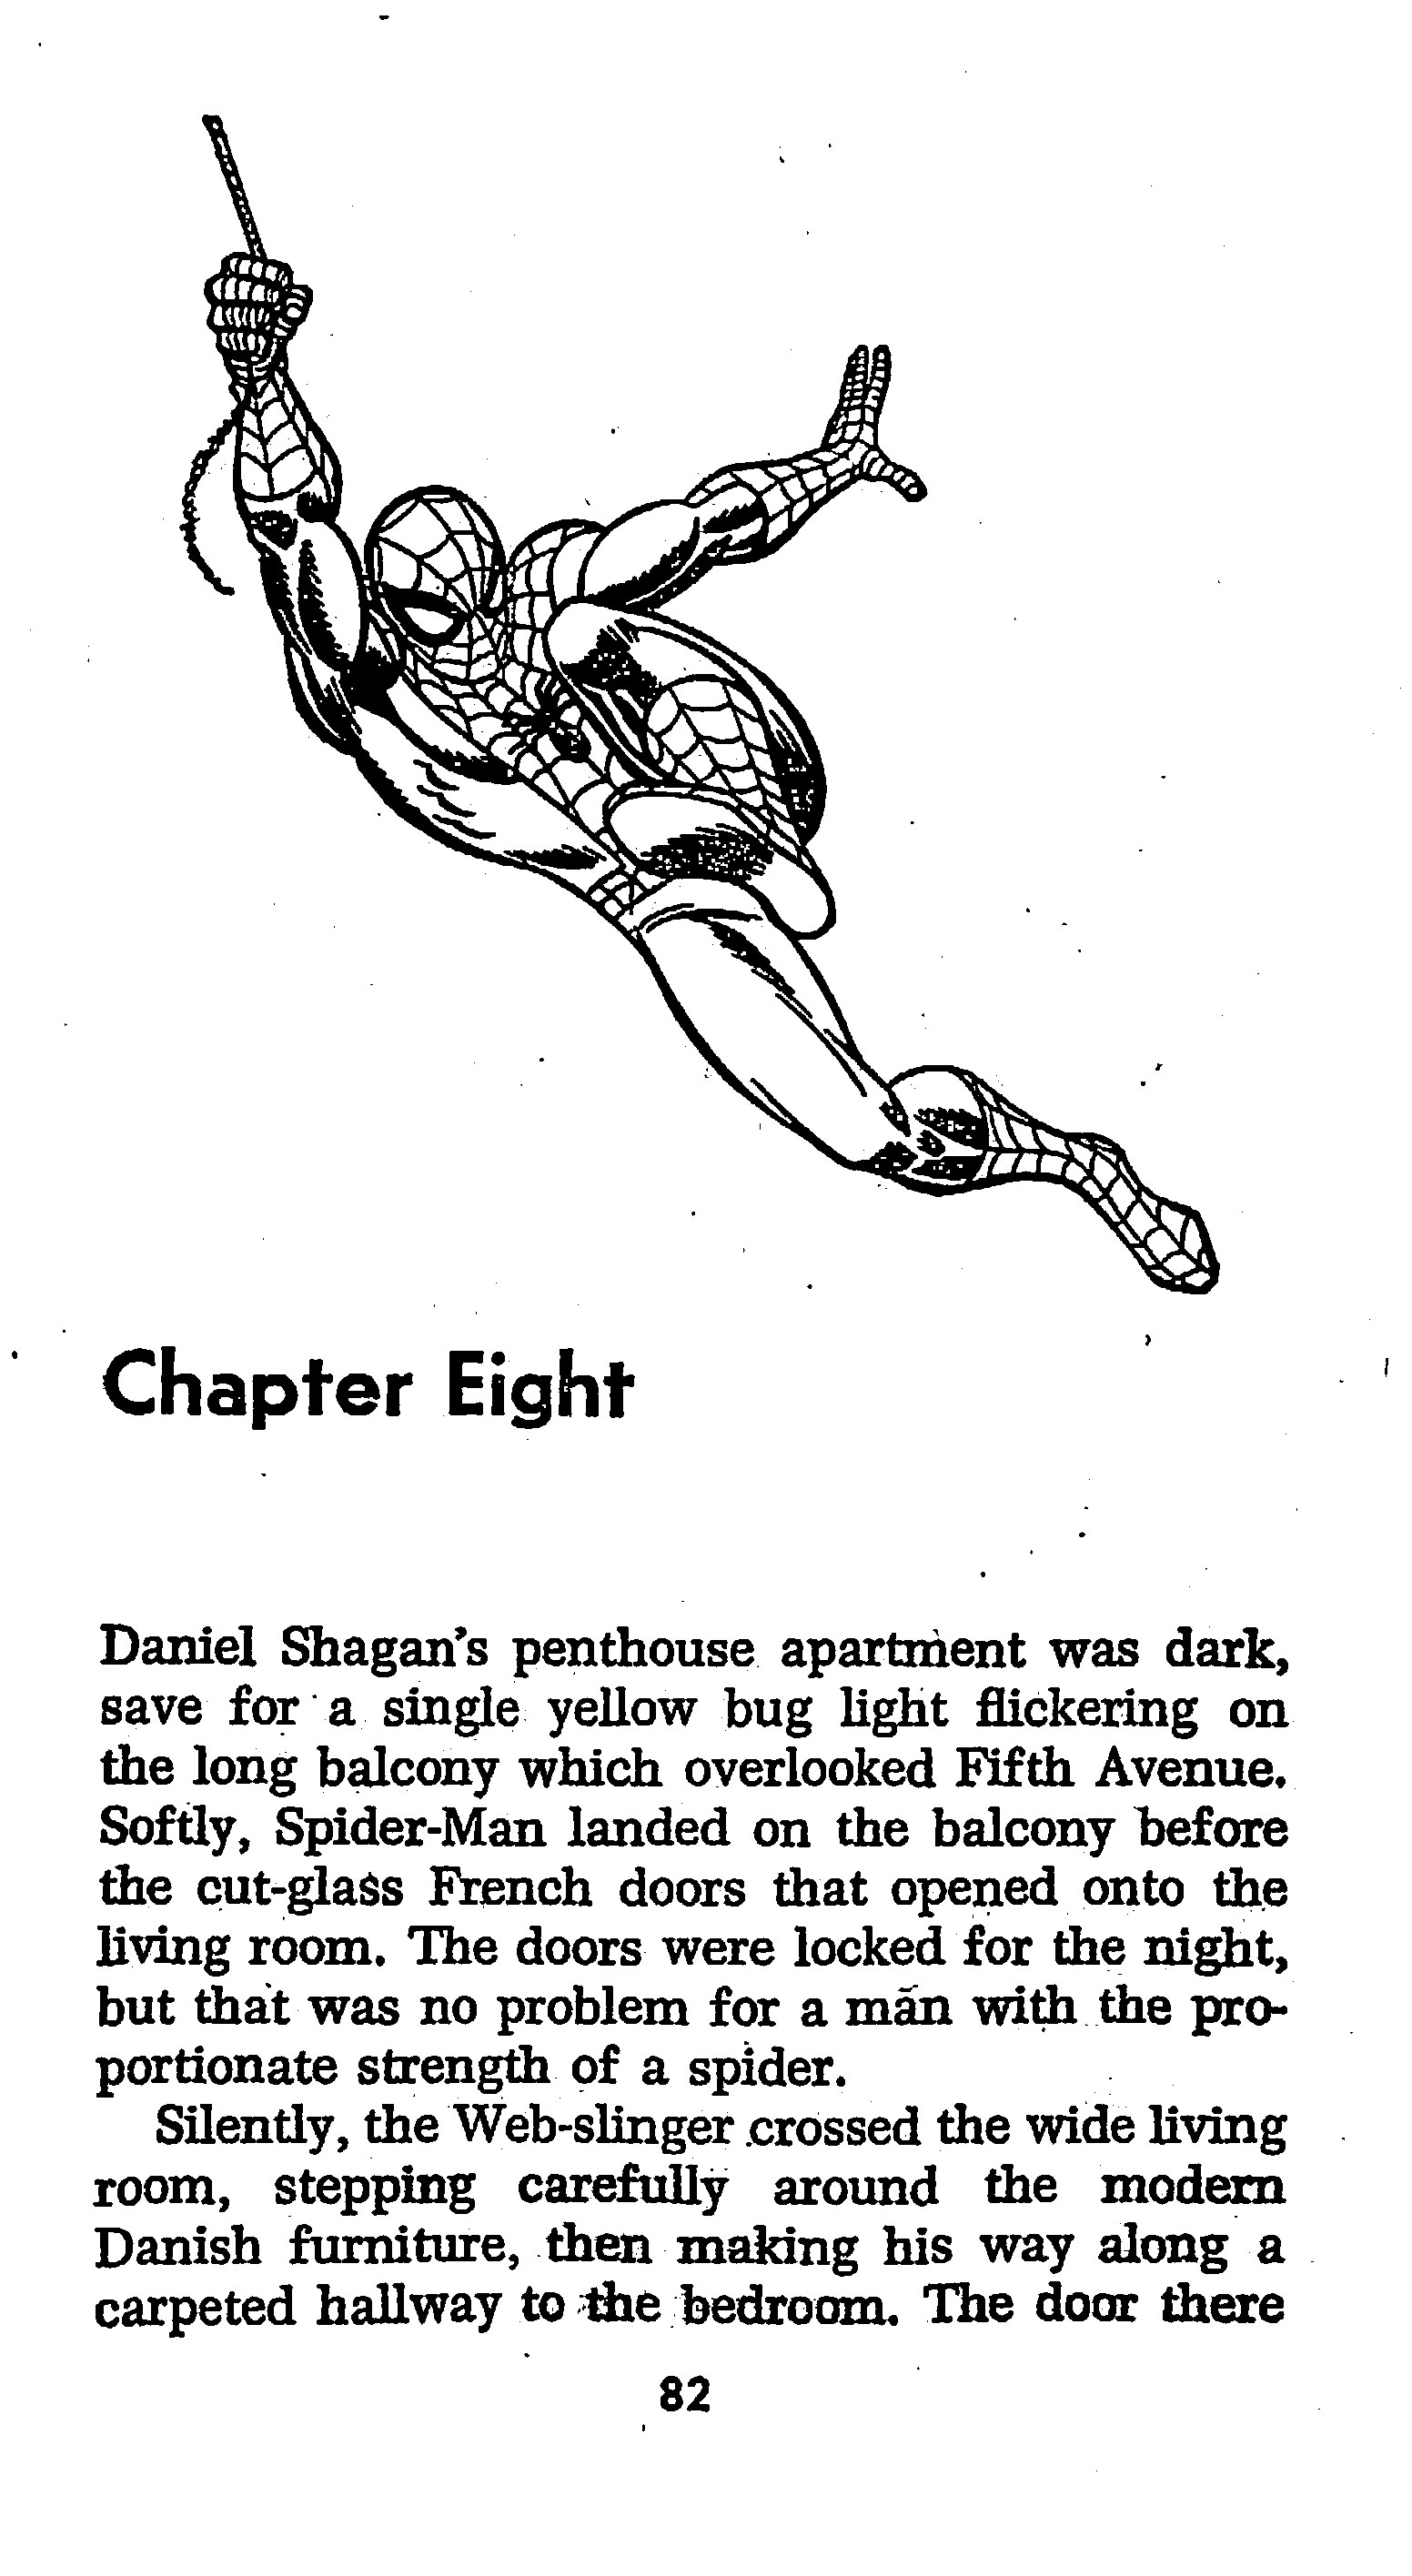 Read online The Amazing Spider-Man: Mayhem in Manhattan comic -  Issue # TPB (Part 1) - 83